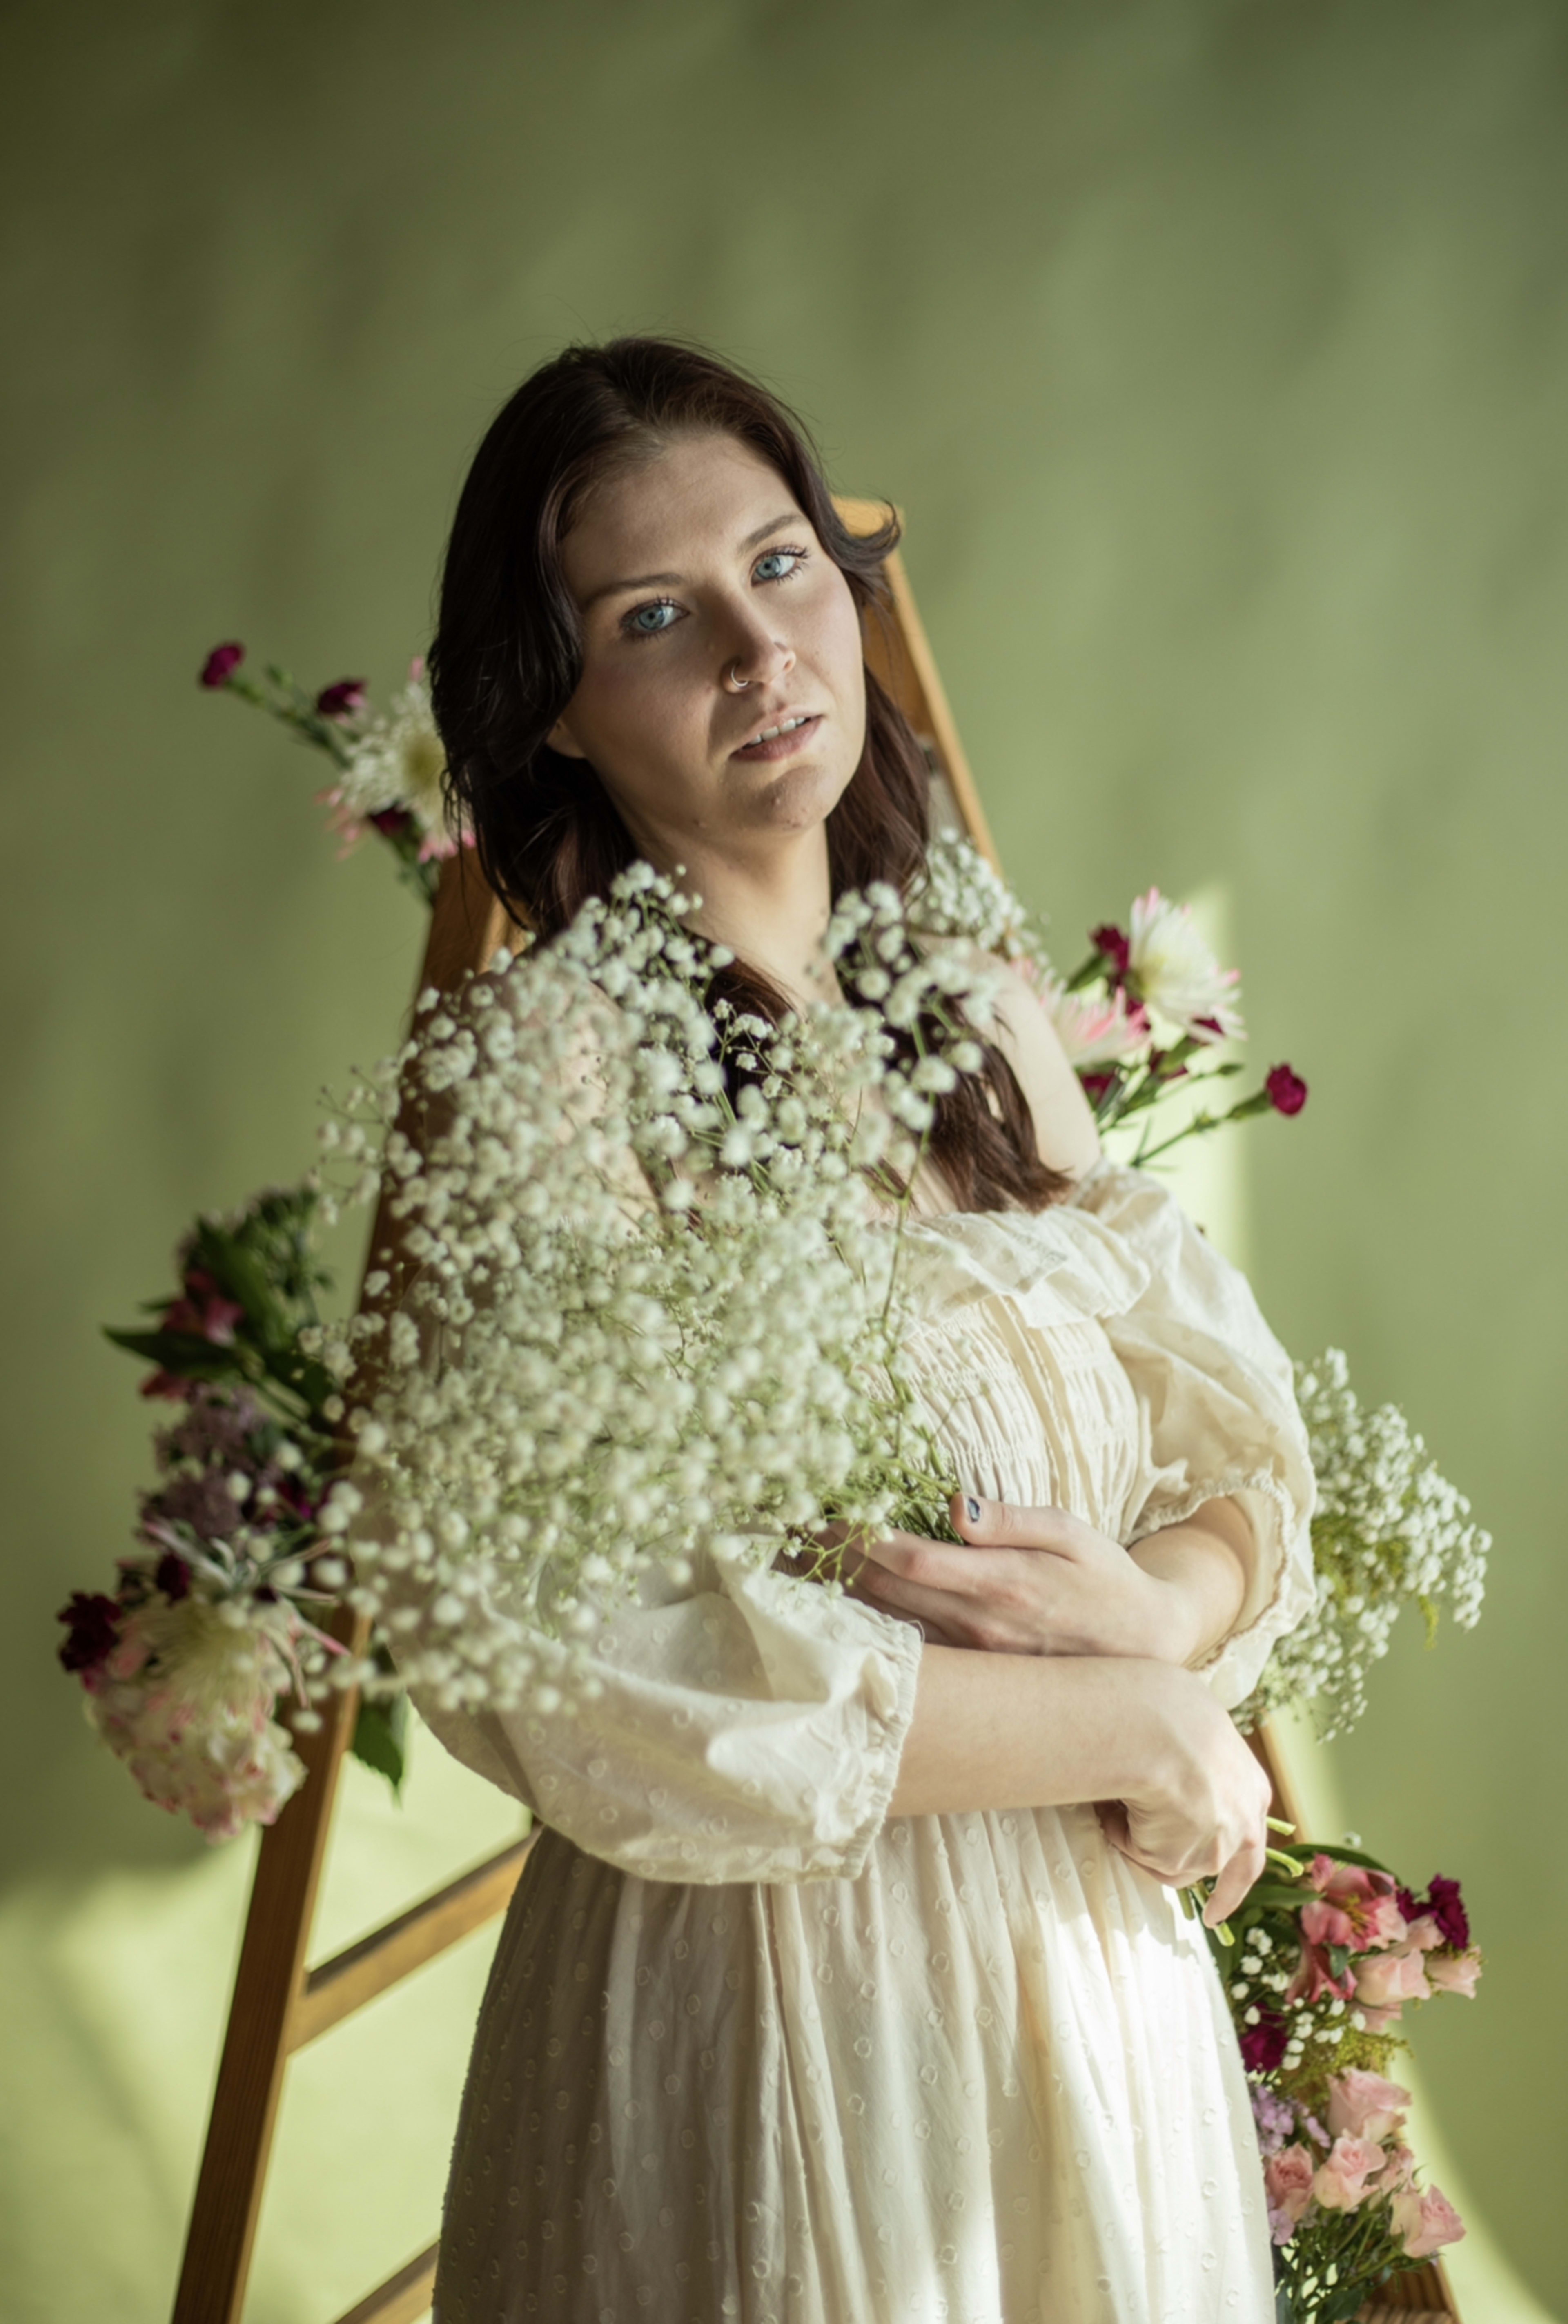 Ein Mode-Fotoshooting mit einer weiß gekleideten Frau und einem Frühlingsblumenstrauß.